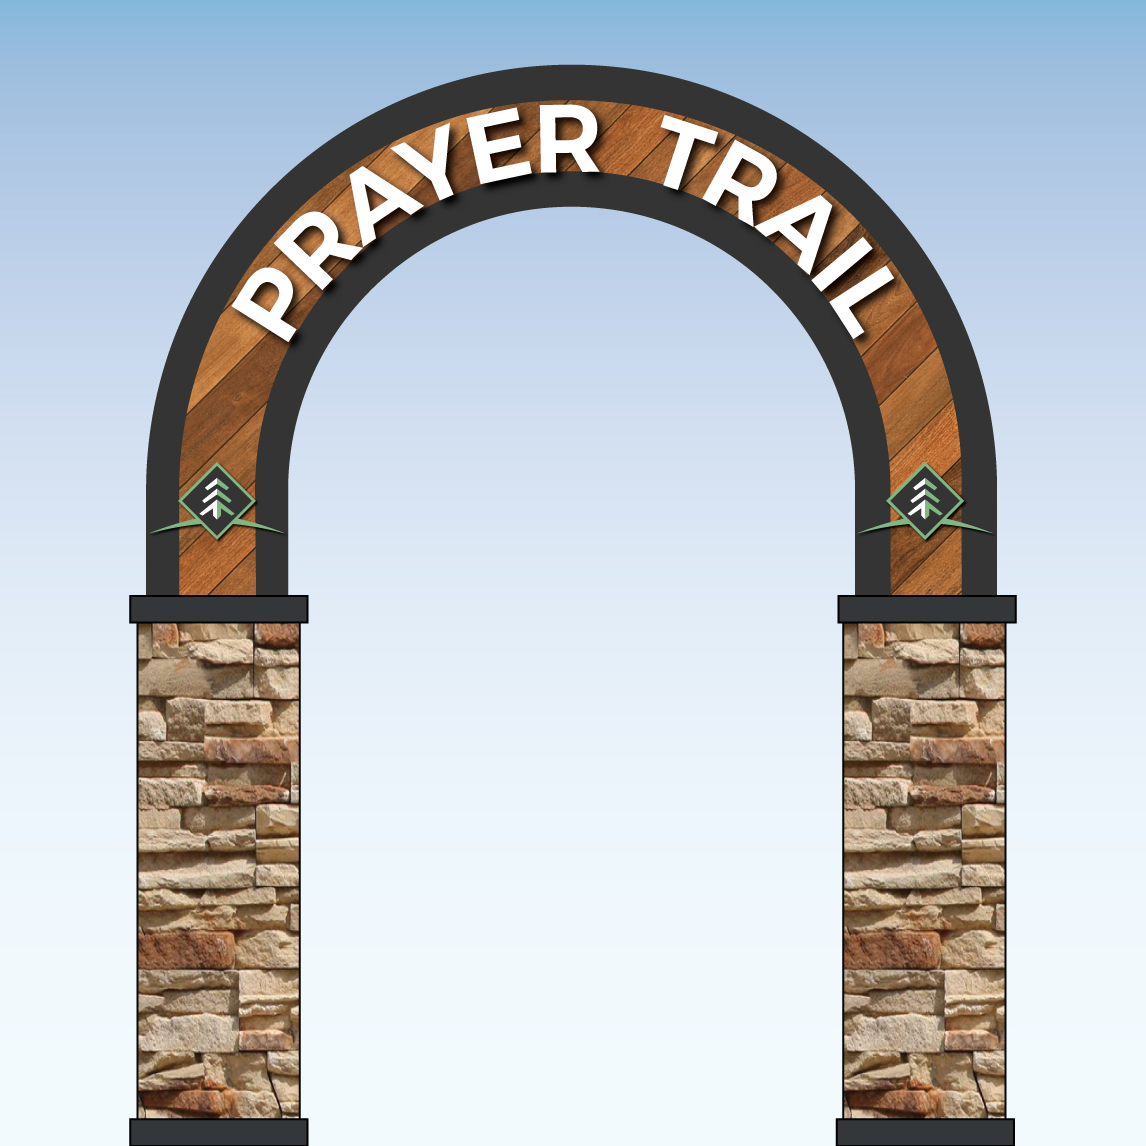 CedarCrest-prayer-trail